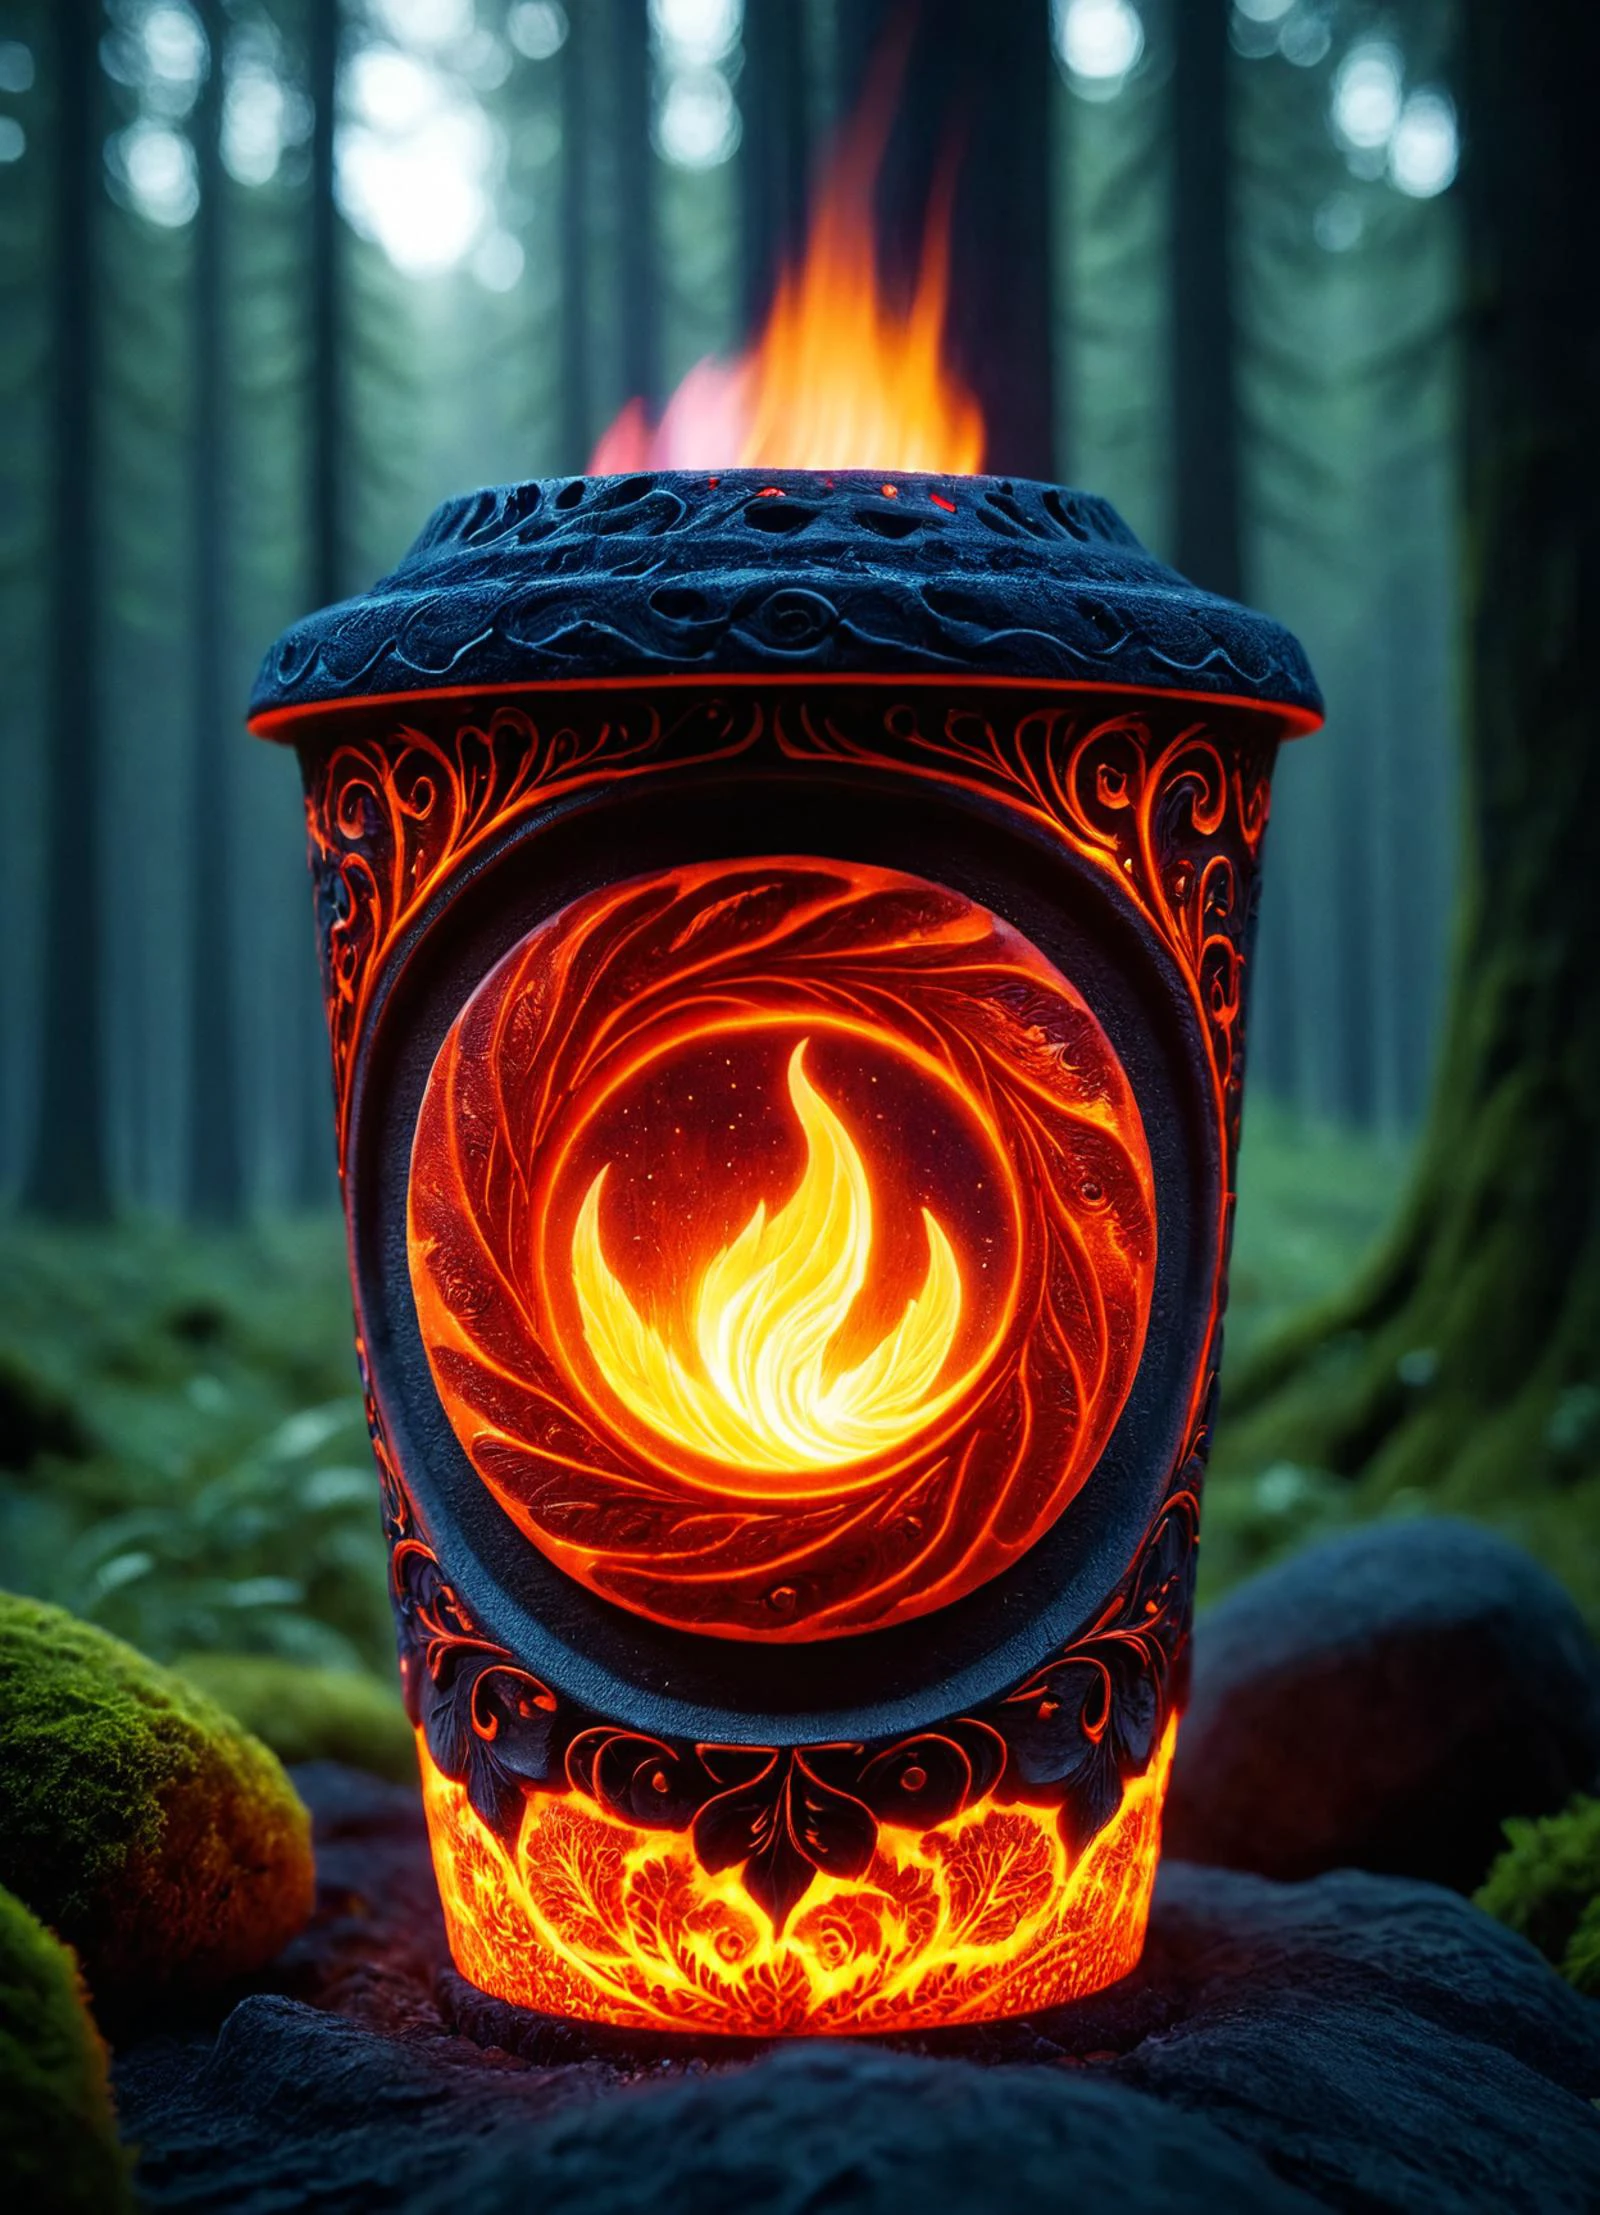 光り輝く hkmagic の映画フィルムの静止画,  女性をテーマにした 3D 彫刻が施された石のカップ, 森の背景, decorated with glowing 火 accents, 芸術の傑作, 視覚的に素晴らしい, 複雑なディテール, シャープなフォーカス, 55ミリメートルF/ 1.8レンズ, 被写界深度, 自然光 woodfigurezr (((十分, 青い火))), 発光から, (火:1.5), shallow 被写界深度, ビネット, 非常に詳細な, 高予算, ボケ, シネマスコープ, 不機嫌な, すごい, 素敵, フィルムグレイン, grainy ral-十分 zavy-flrscnc, 蛍光粉塵, 輝くほこり